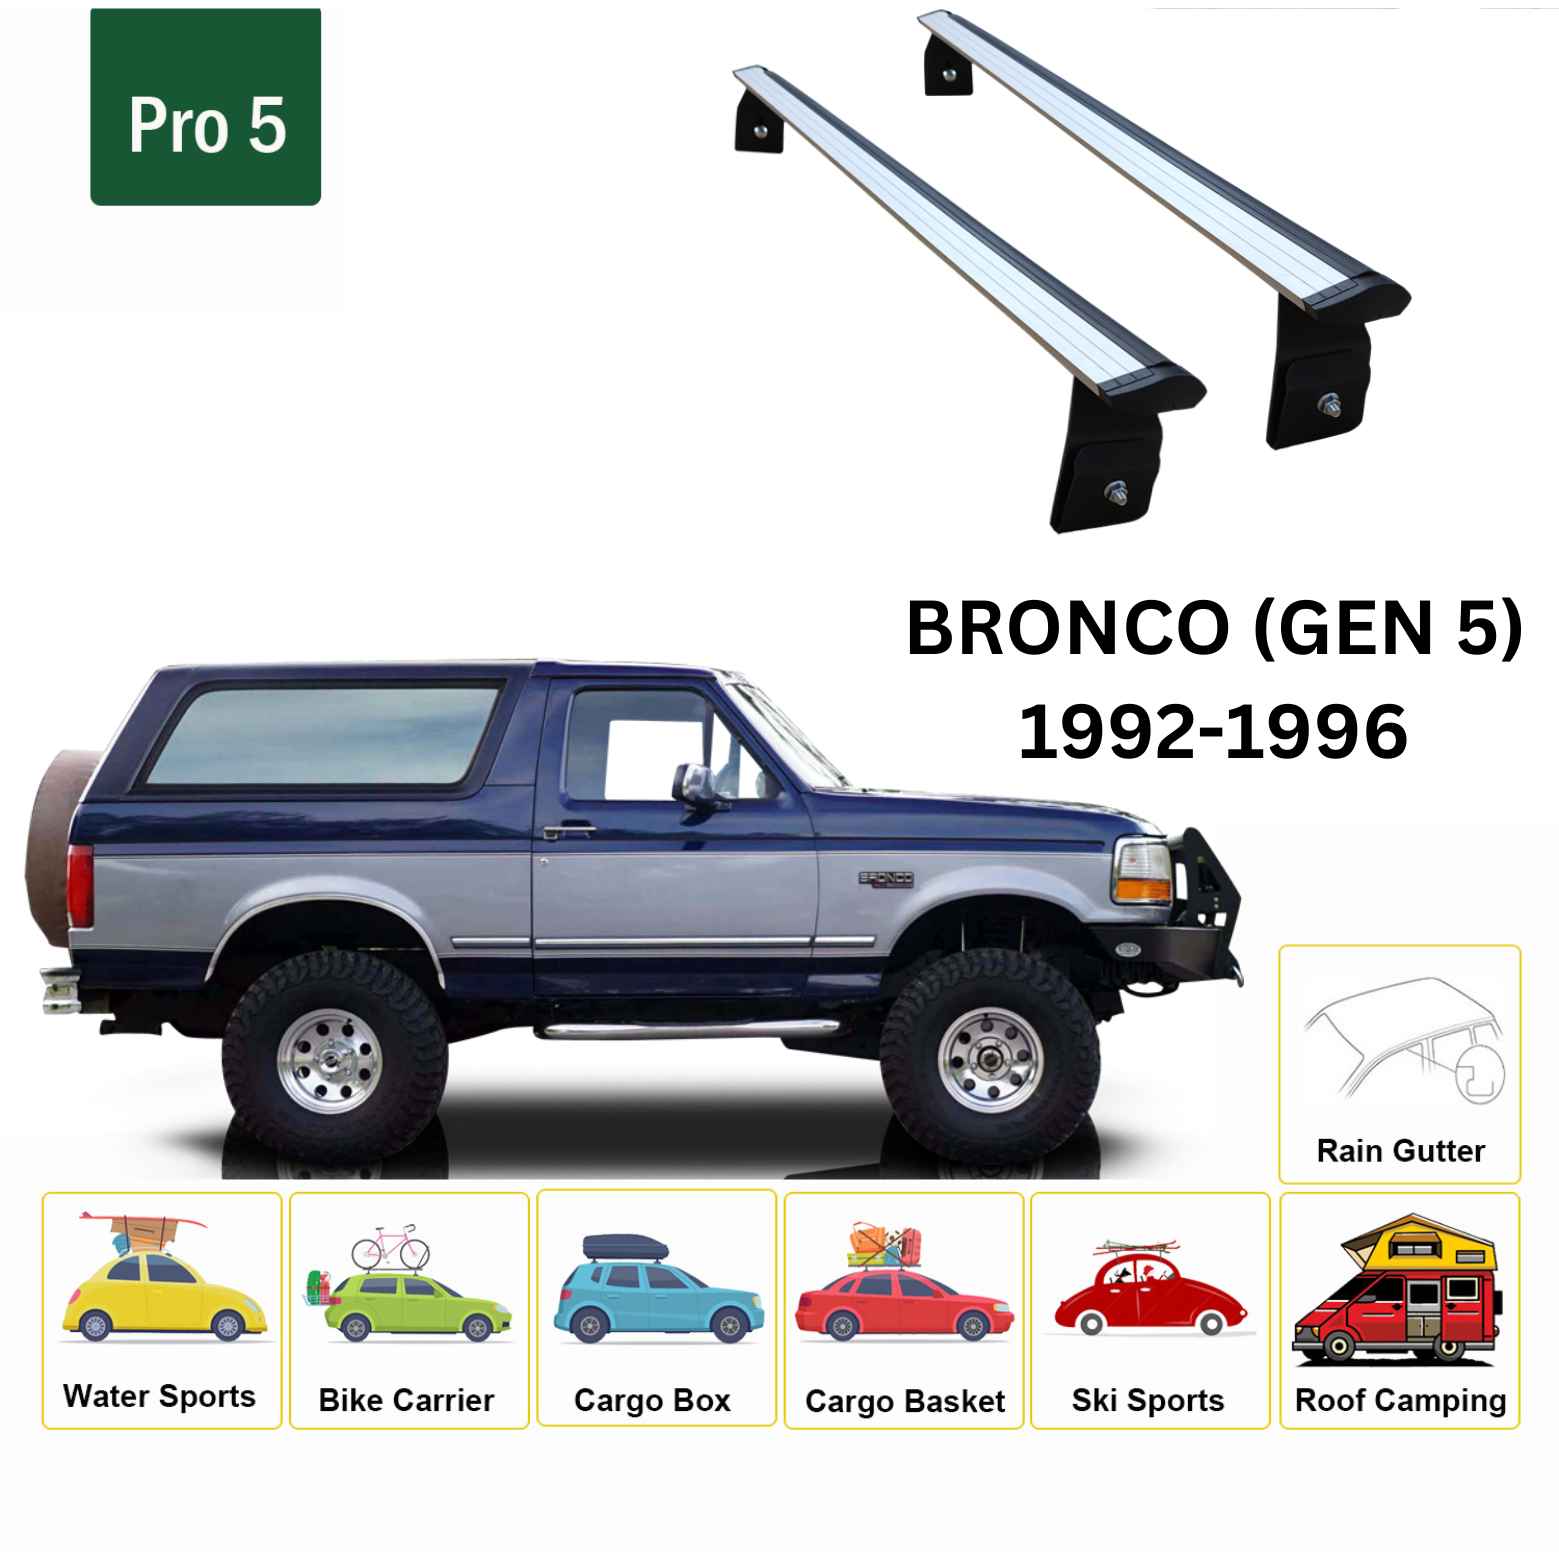 Für Ford Bronco Sport 2020-Up Dachträgersystem, Aluminium-Querstange, Metallhalterung, abschließbar, Schwarz